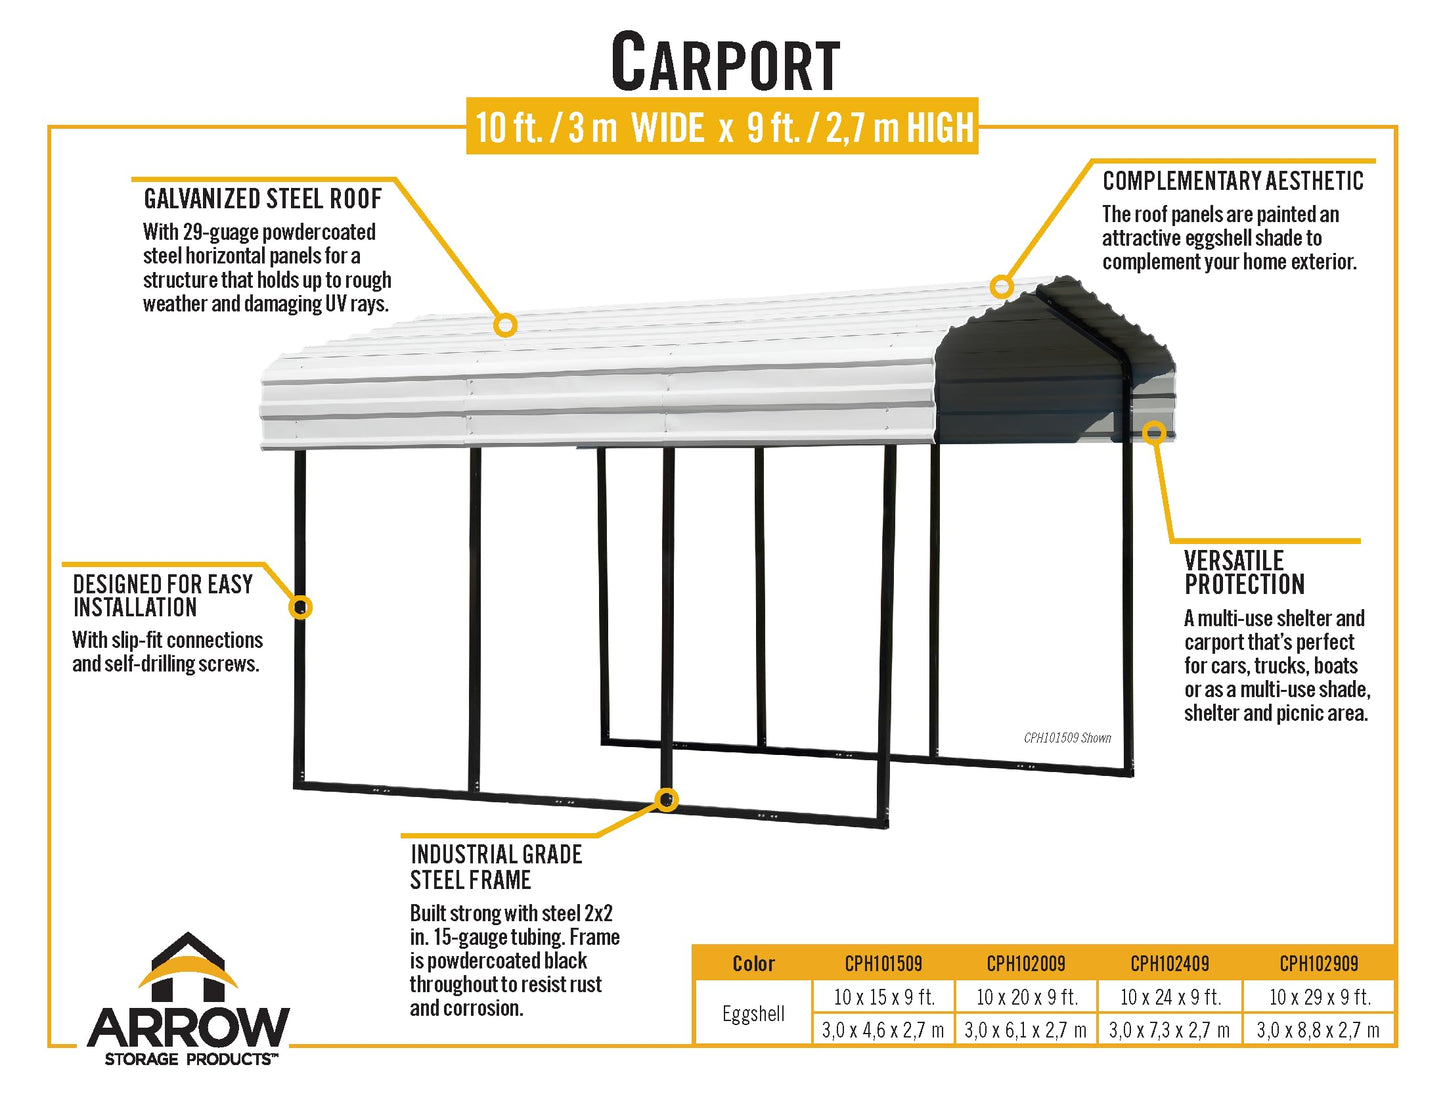 Arrow Carport, 10 ft. x 29 ft. x 9 ft. Eggshell 10' x 29' x 9'